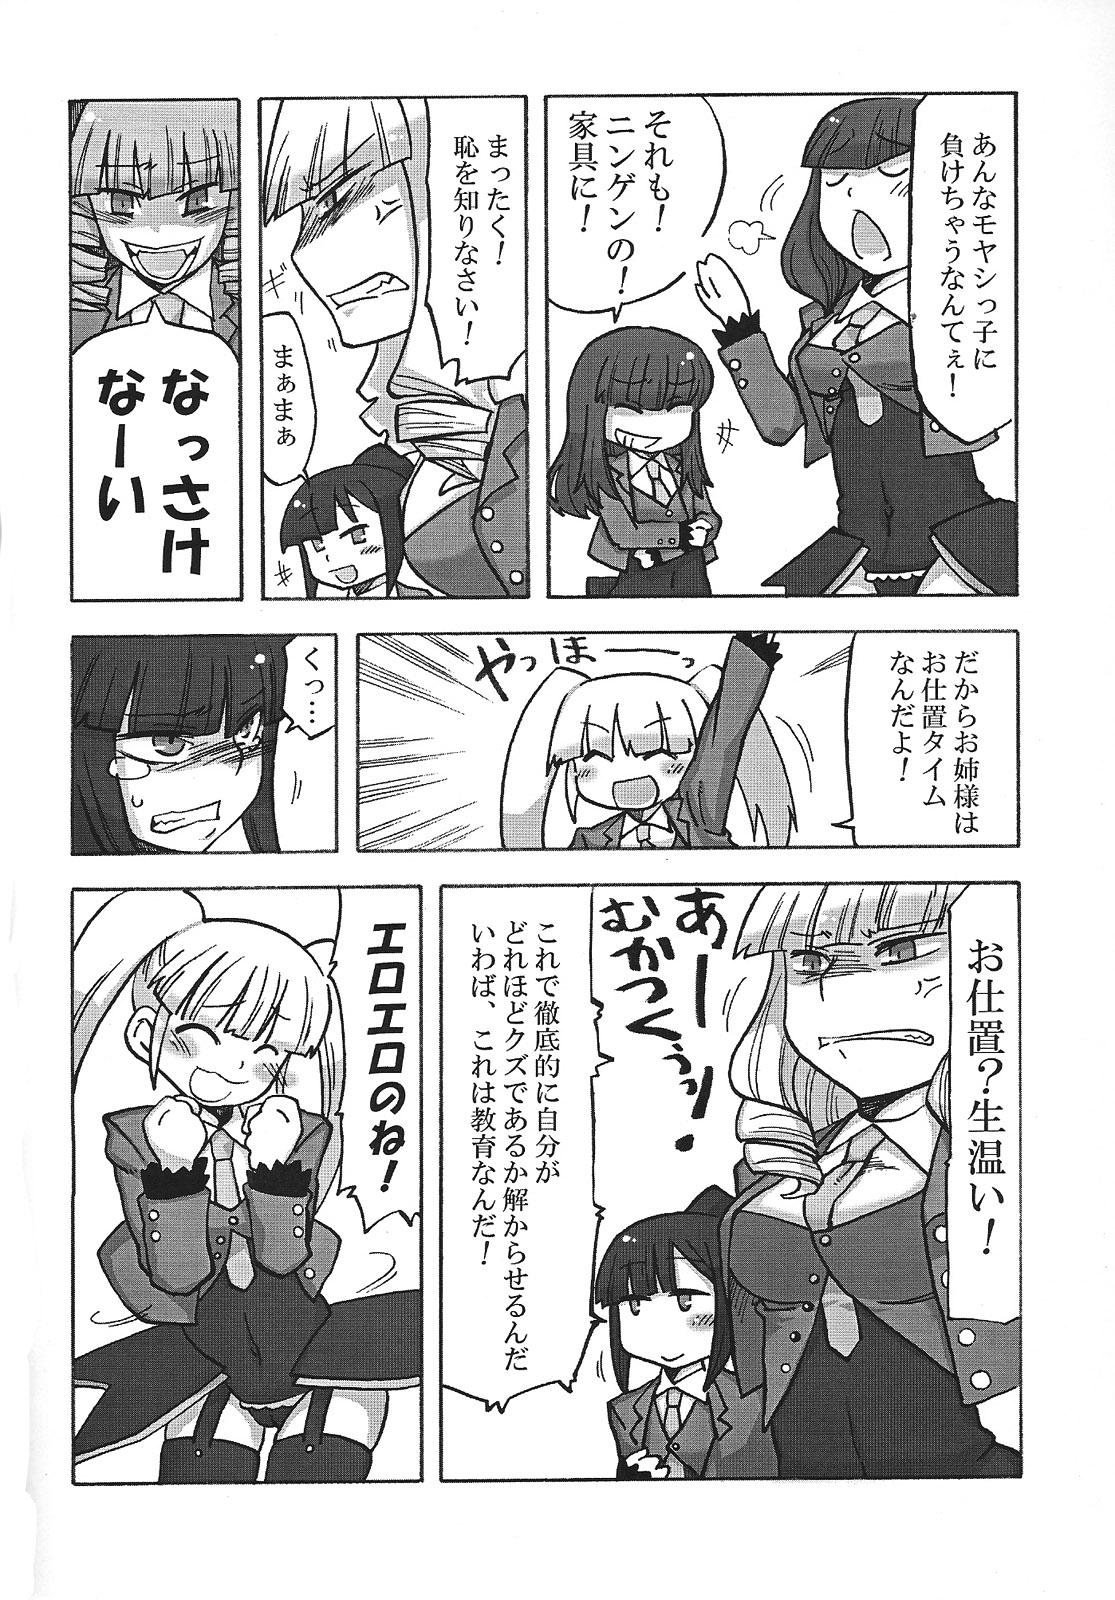 Rubbing Nakayoshi 7 Shimai - Umineko no naku koro ni Ftvgirls - Page 5